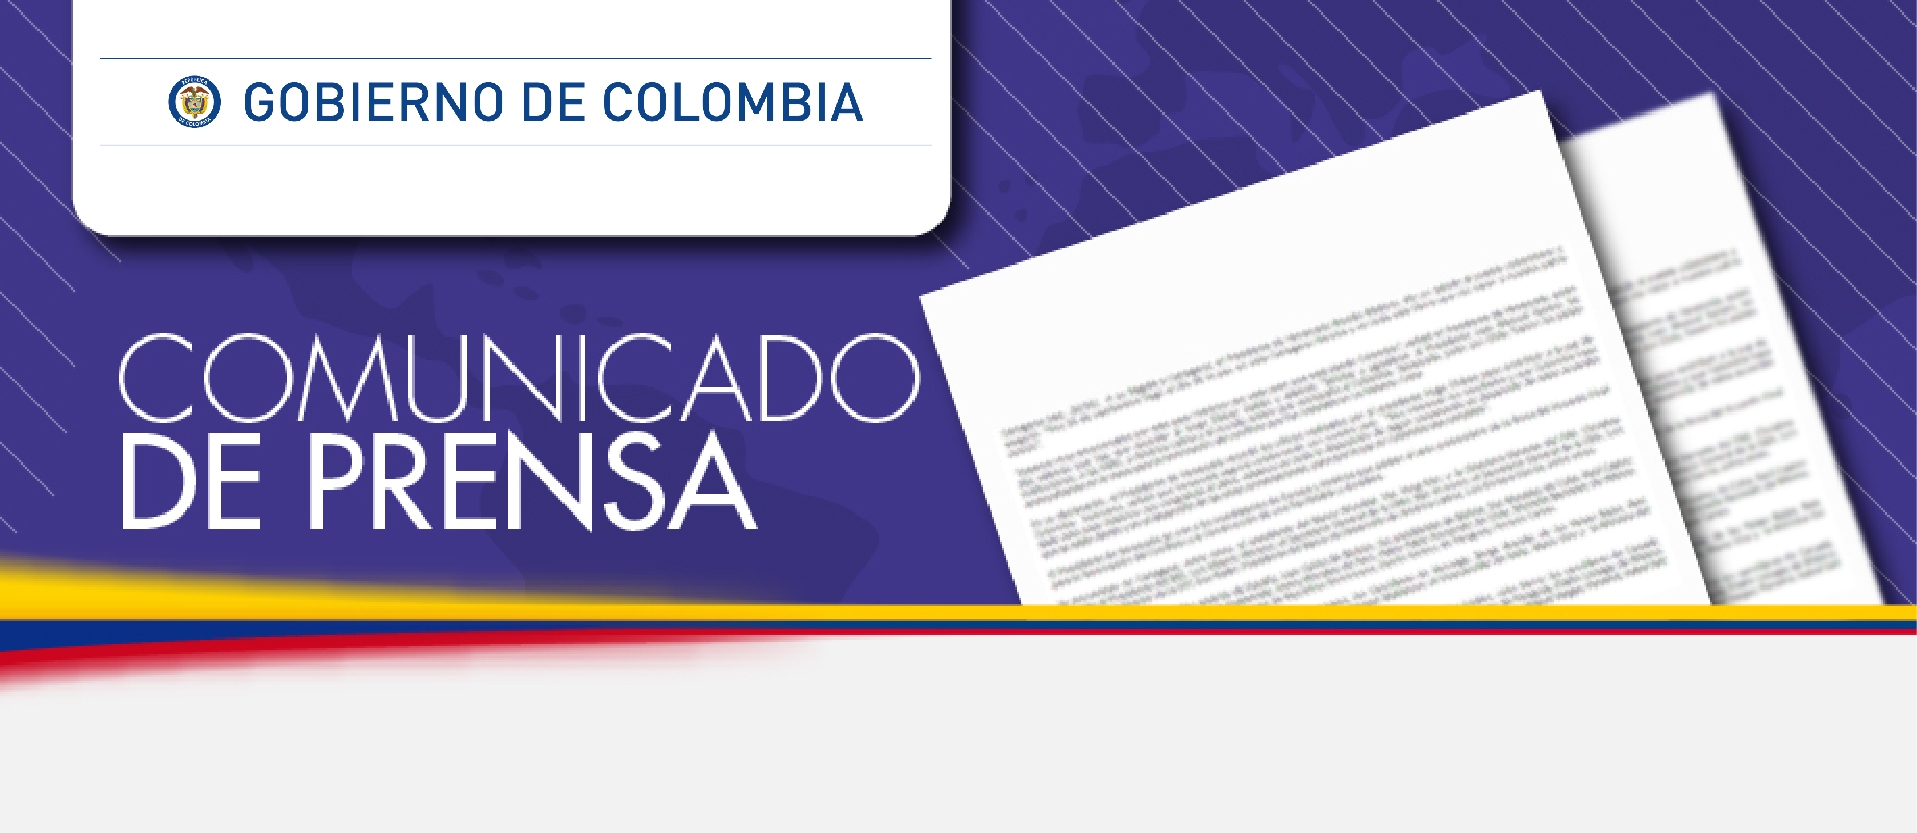 Comunicado del Gobierno de Colombia sobre los hechos terroristas perpetrados en Egipto